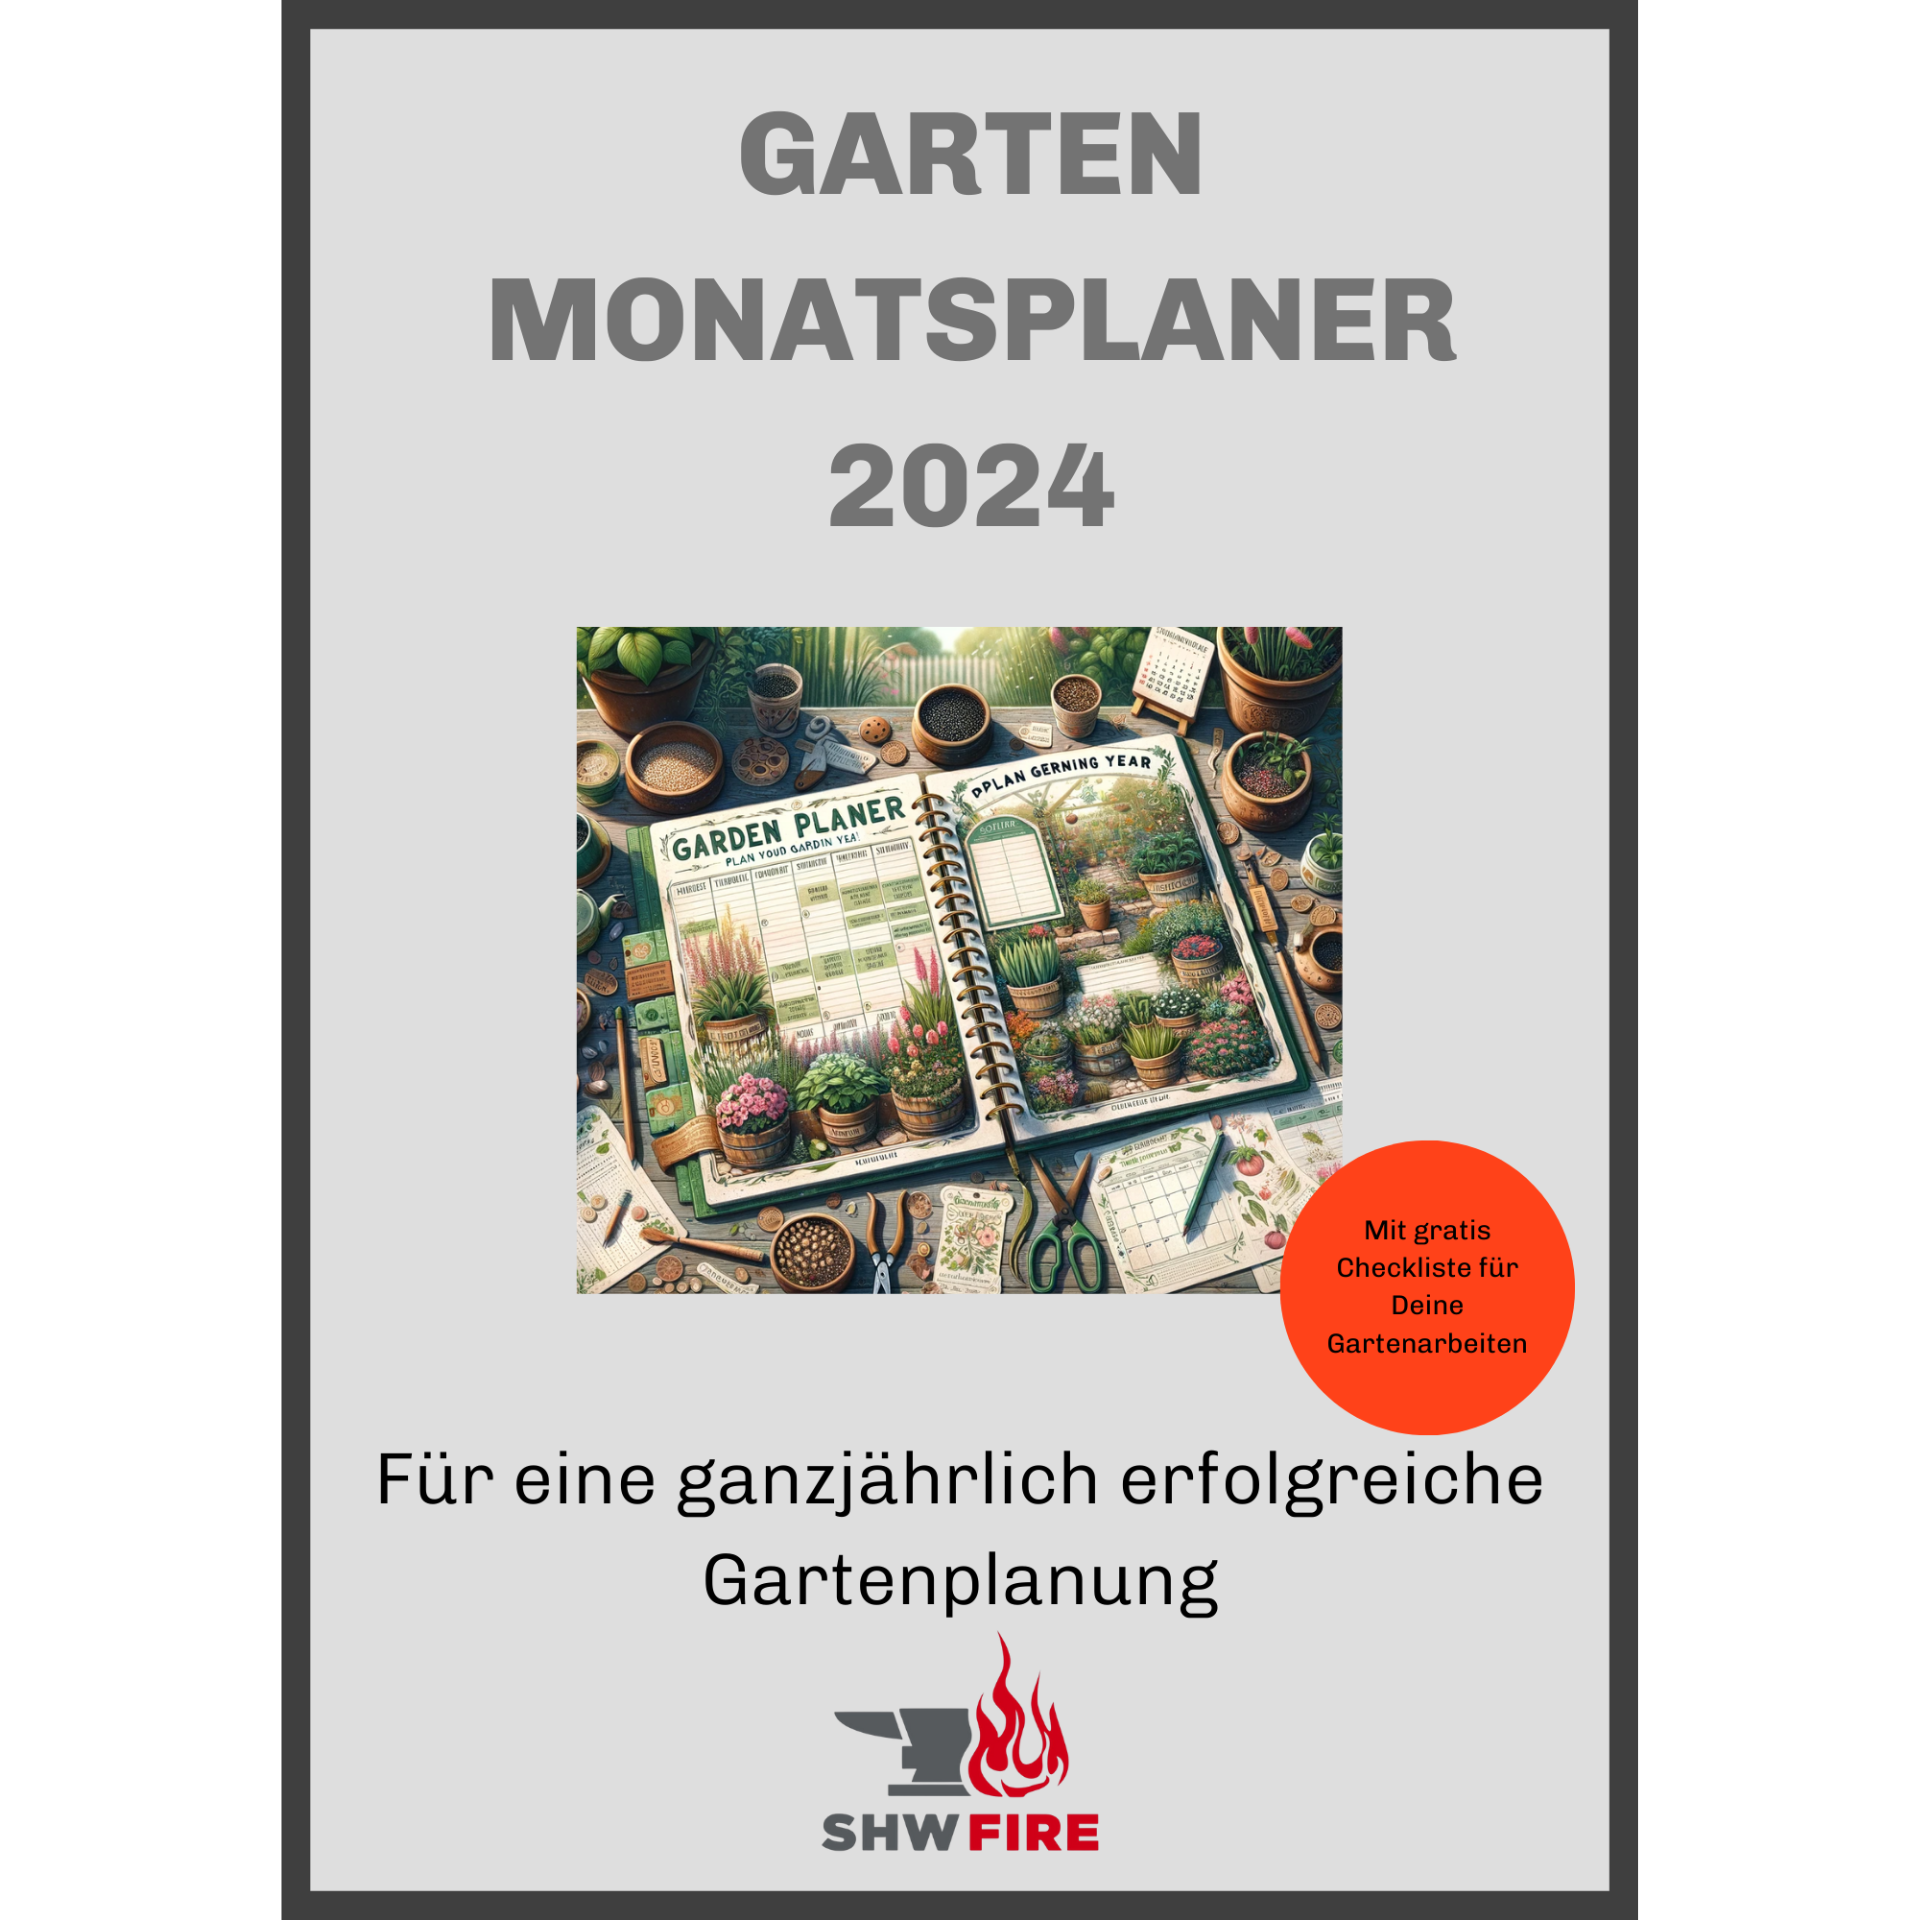 E-Book "Garten Monatsplaner"